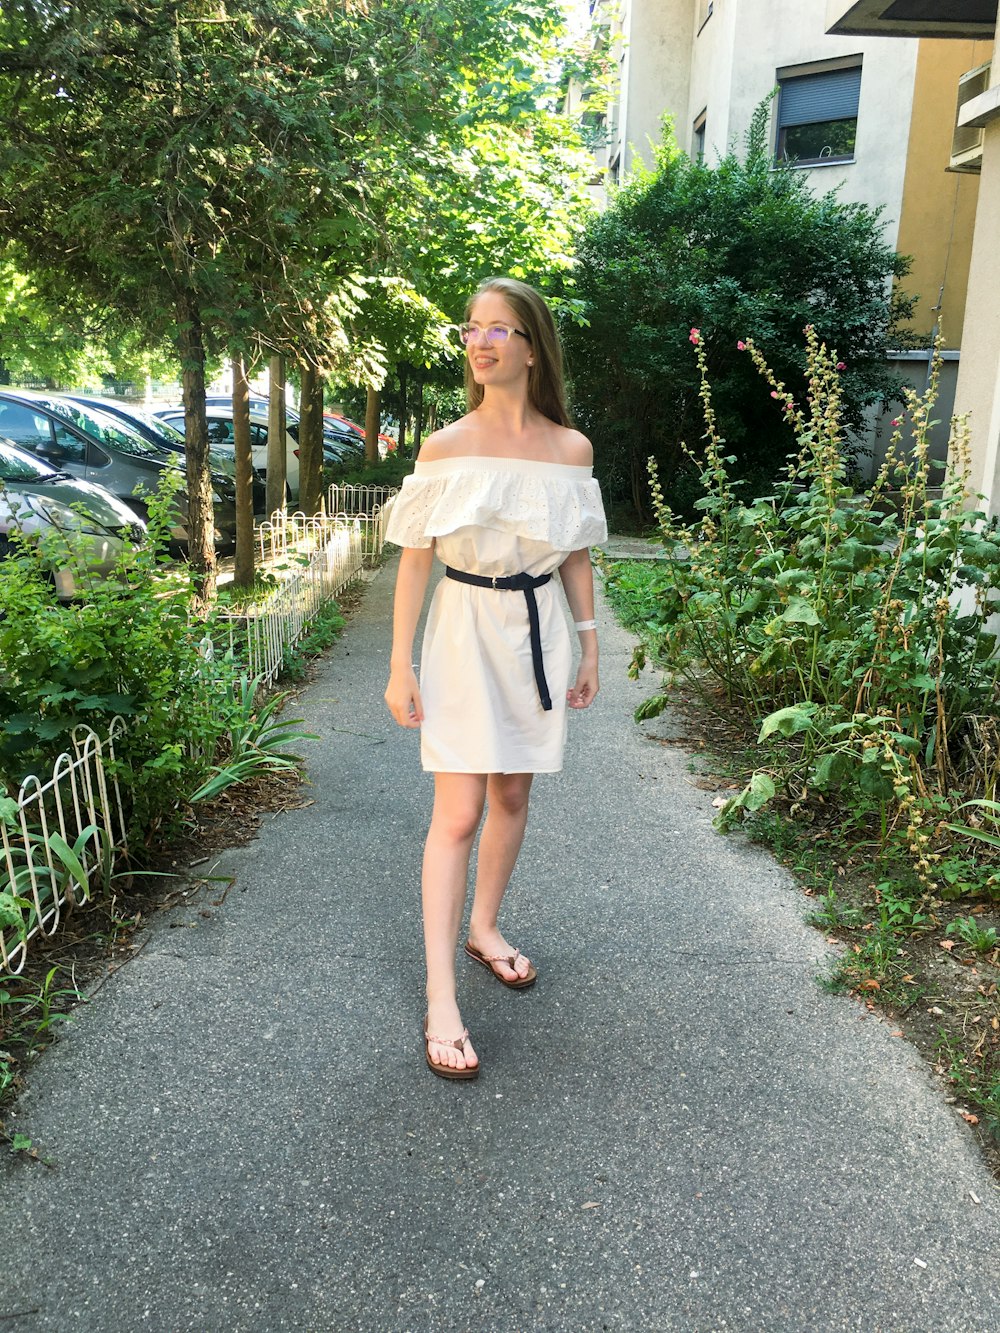 Frau in weißem Kleid steht auf dem Weg